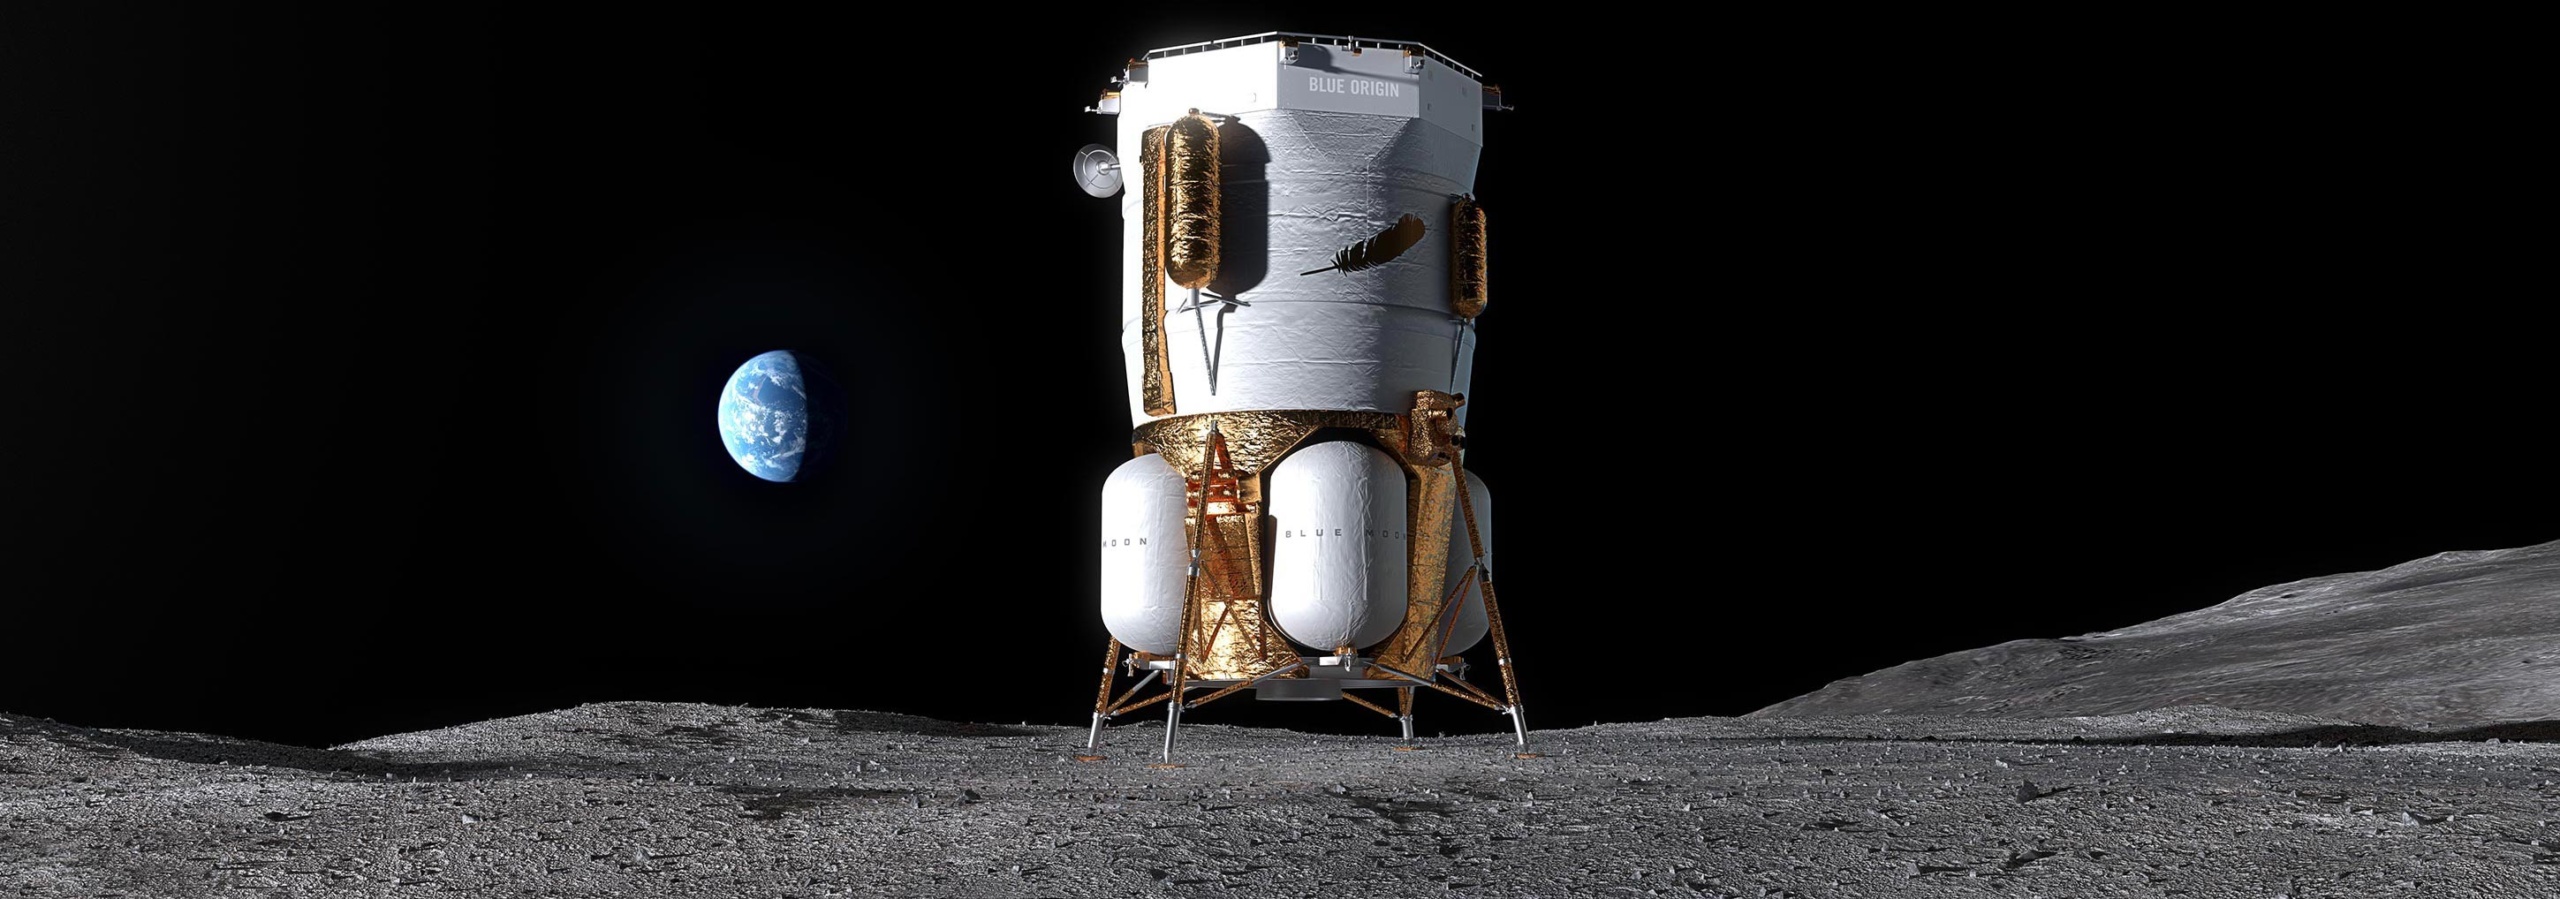 Джефф Безос показал лунный посадочный аппарат Blue Moon, созданный для NASA